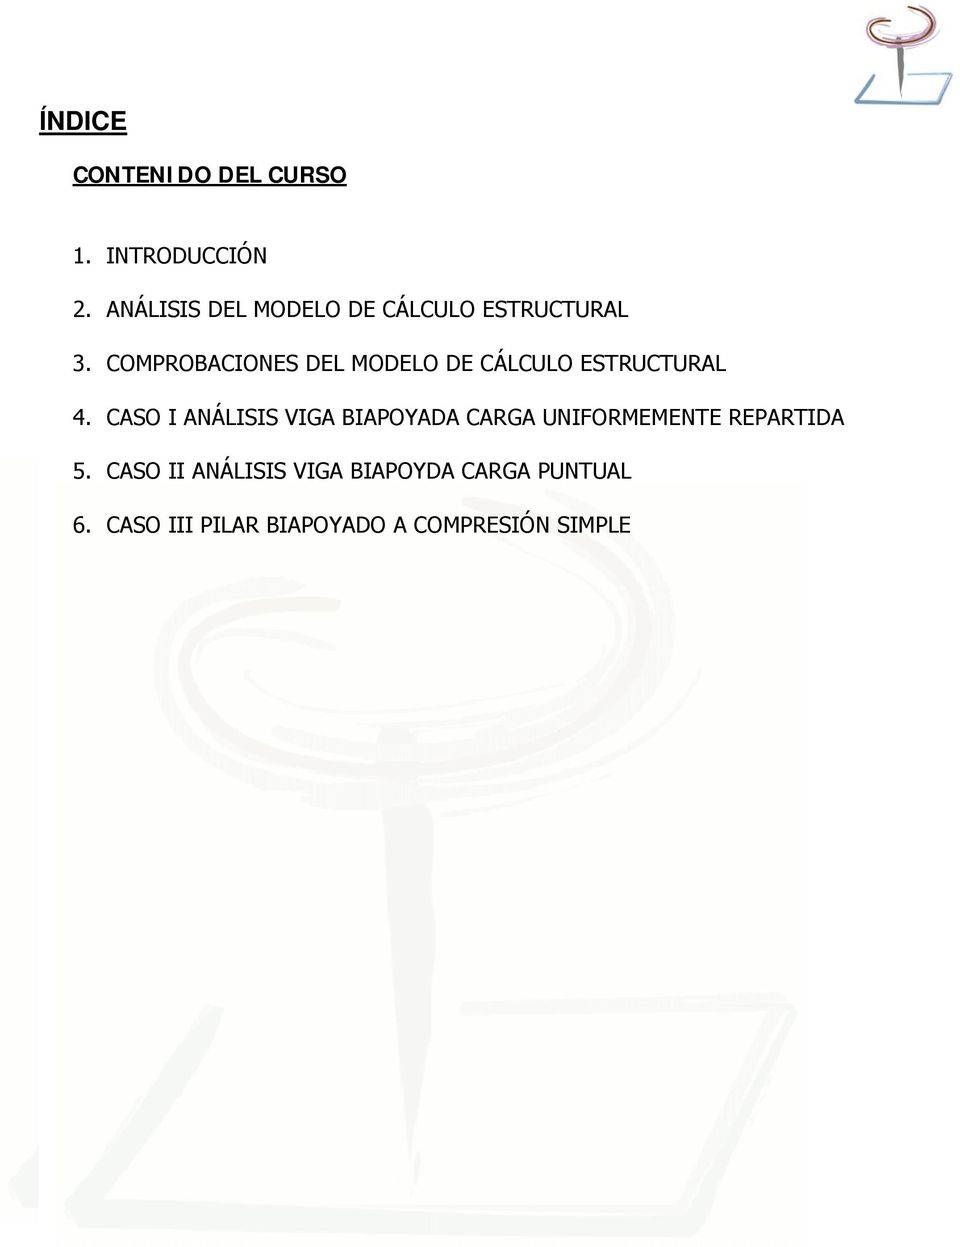 COMPROBACIONES DEL MODELO DE CÁLCULO ESTRUCTURAL 4.